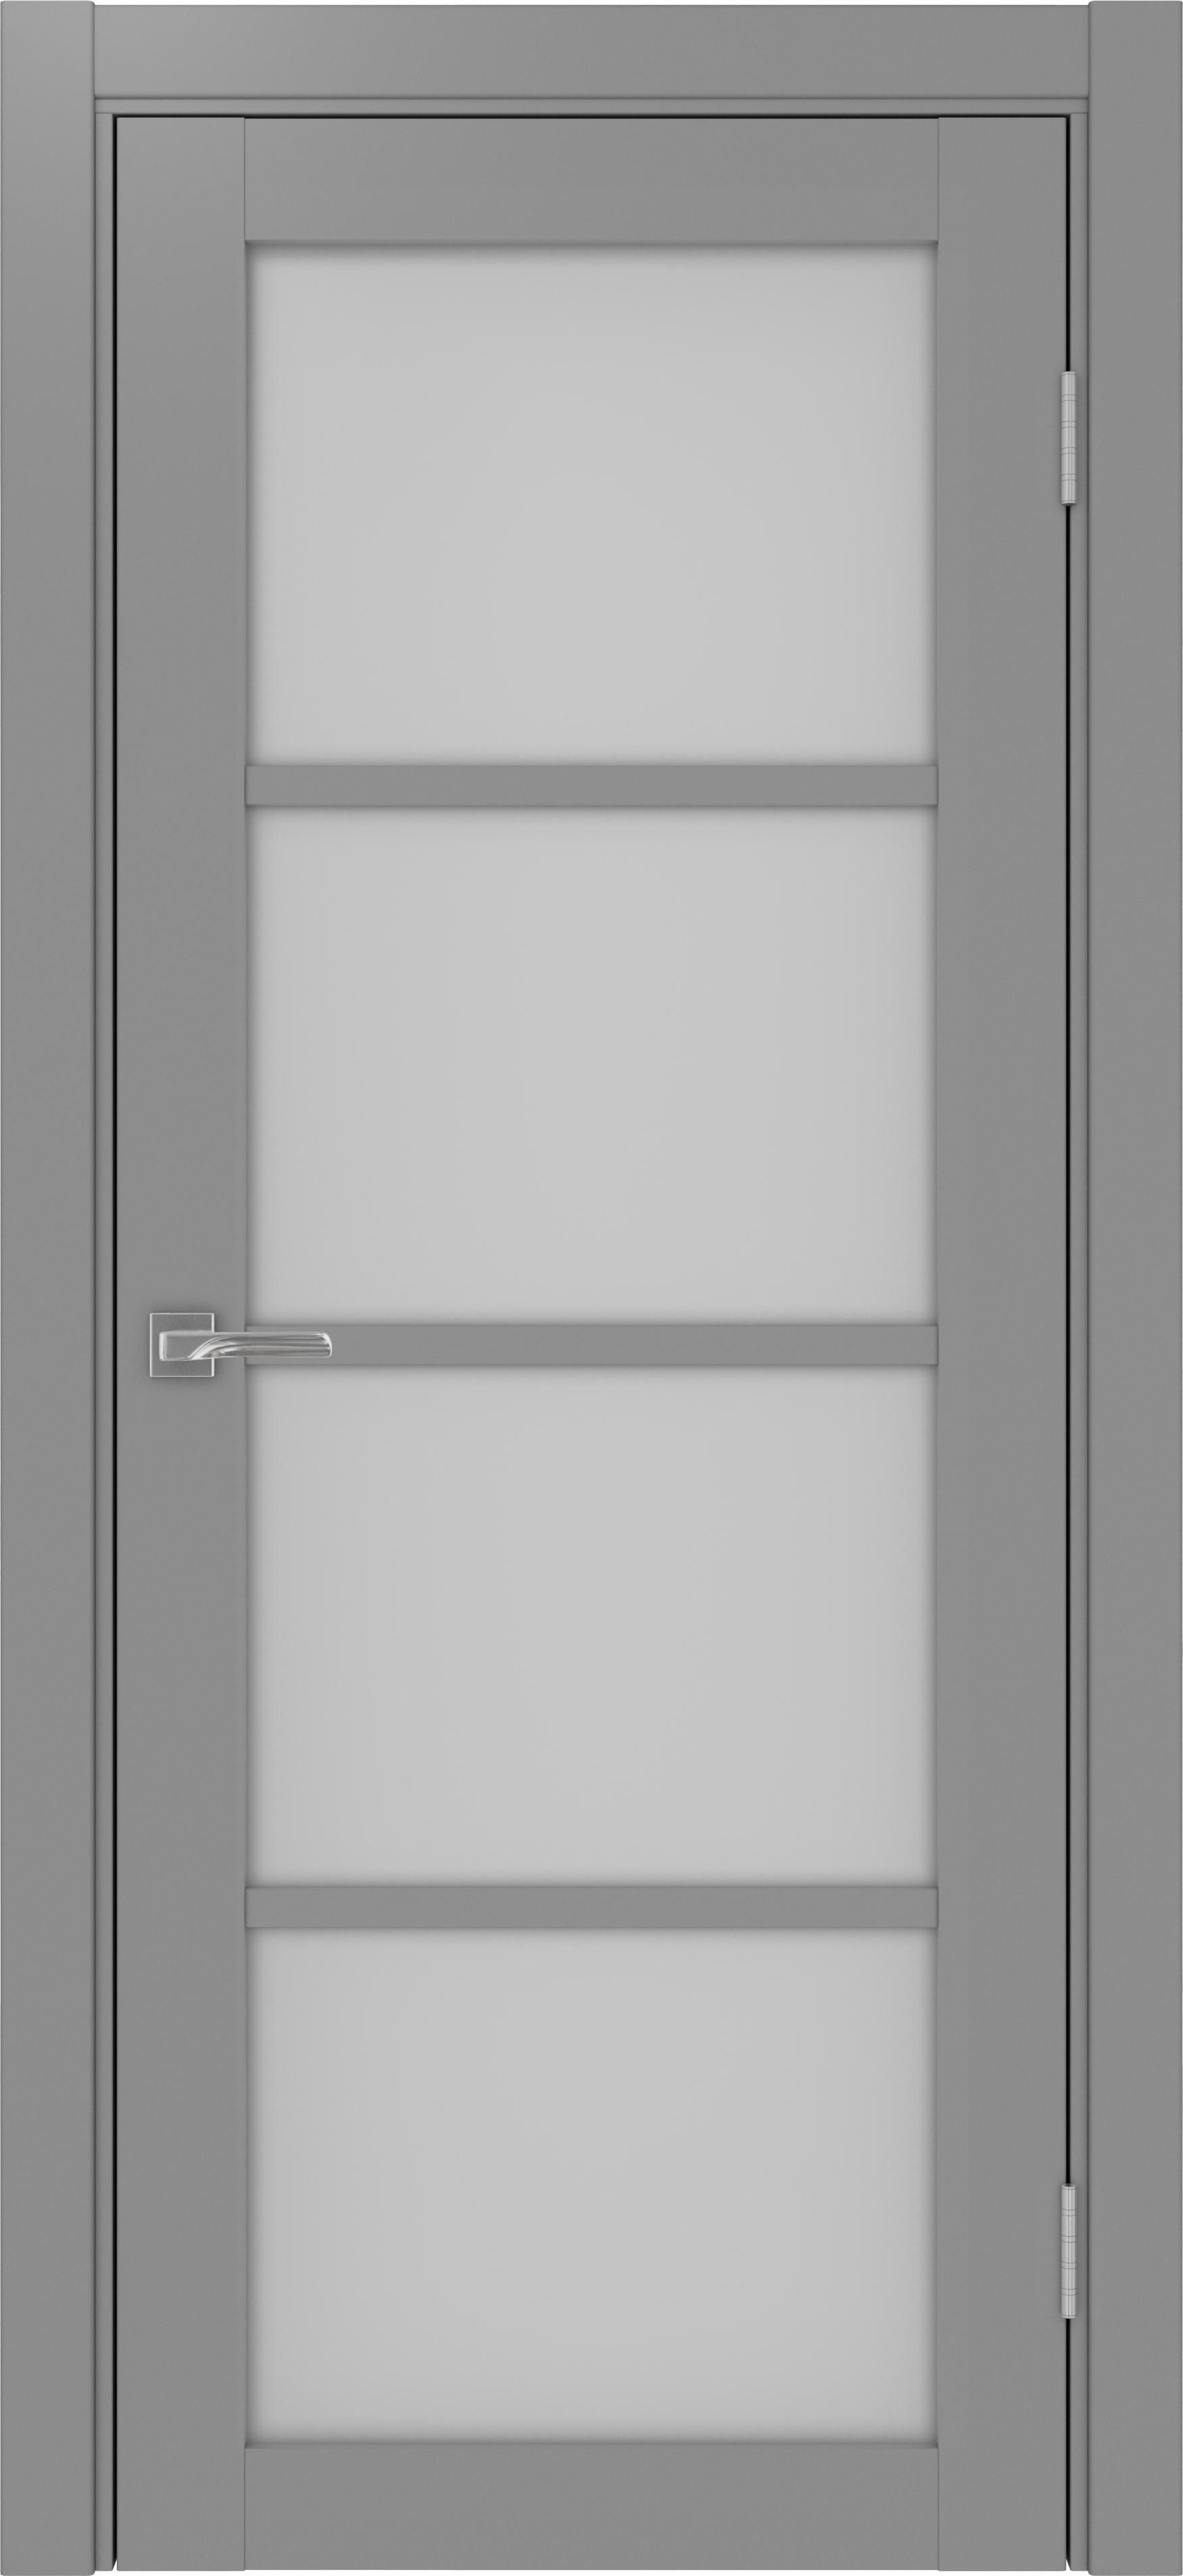 Межкомнатная дверь «Турин 540.2222 Серый» стекло сатин